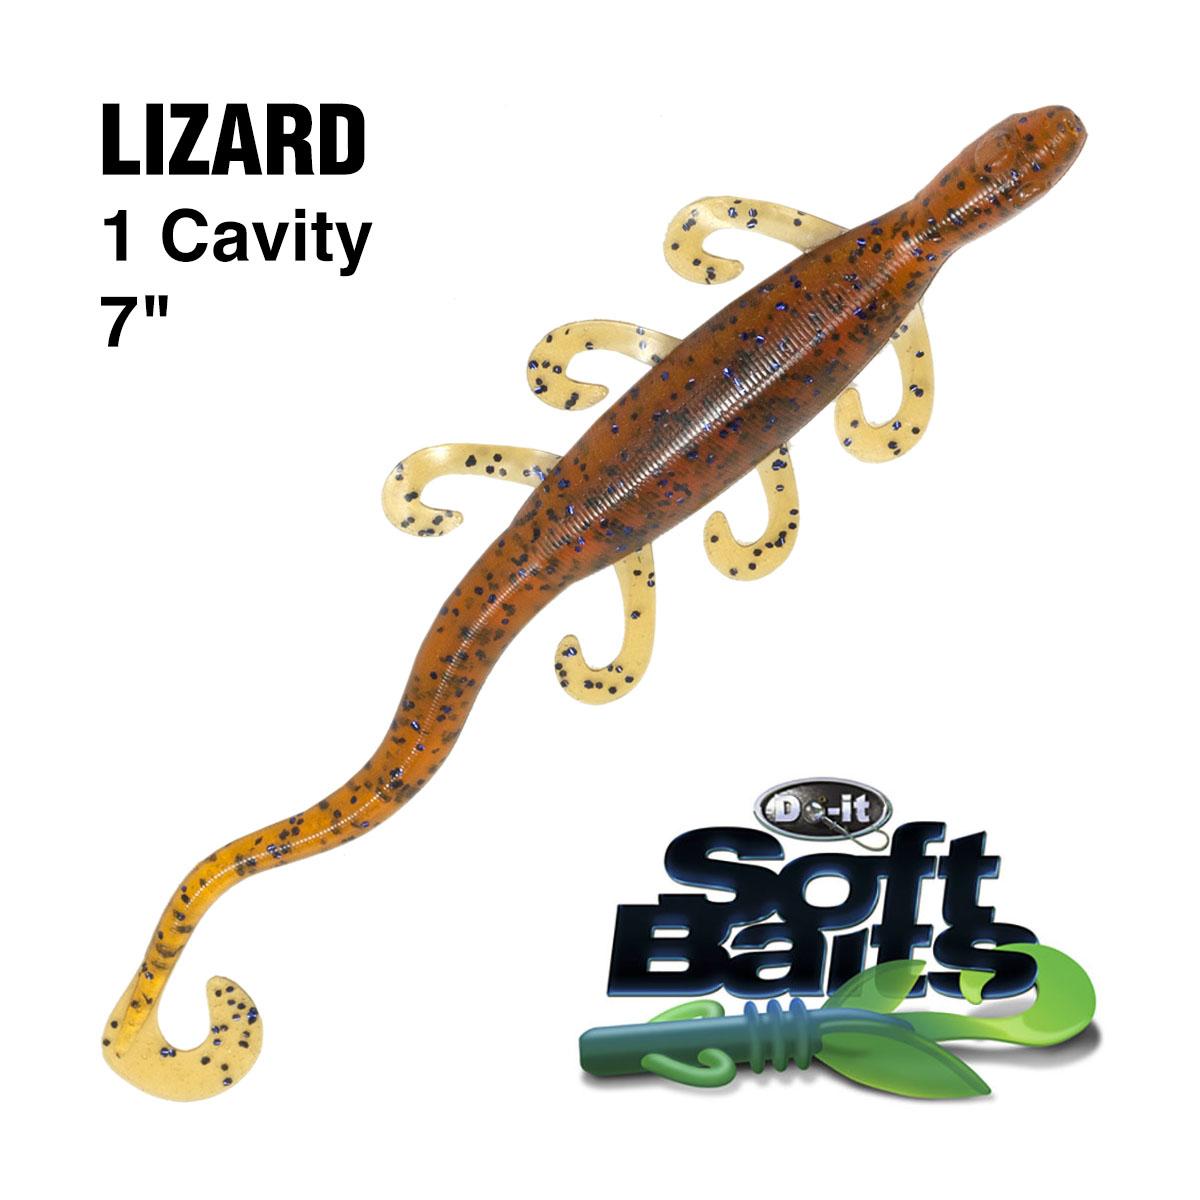 Do-It ES Lizard, Essential Series Soft Plastic Bait Molds